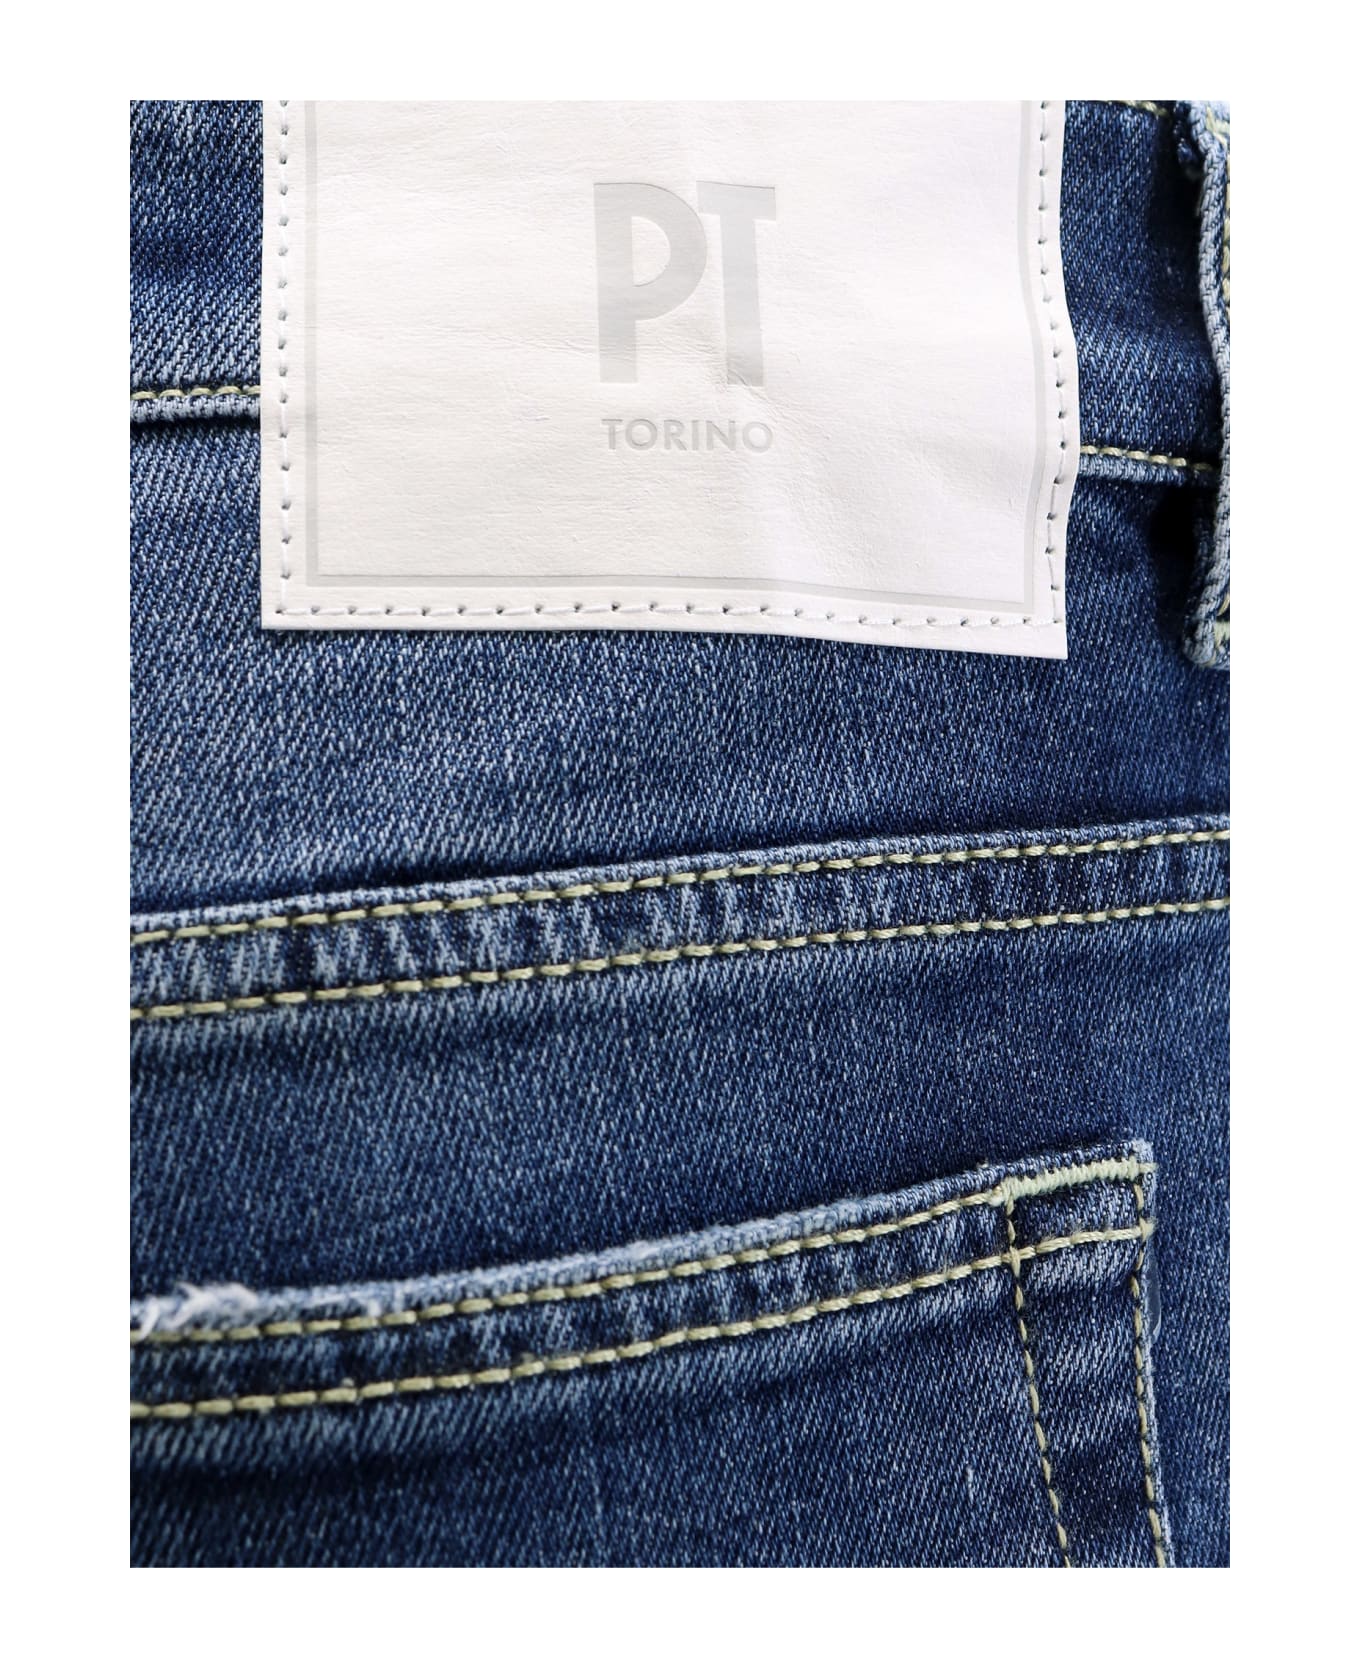 PT Torino Jeans - Denim デニム